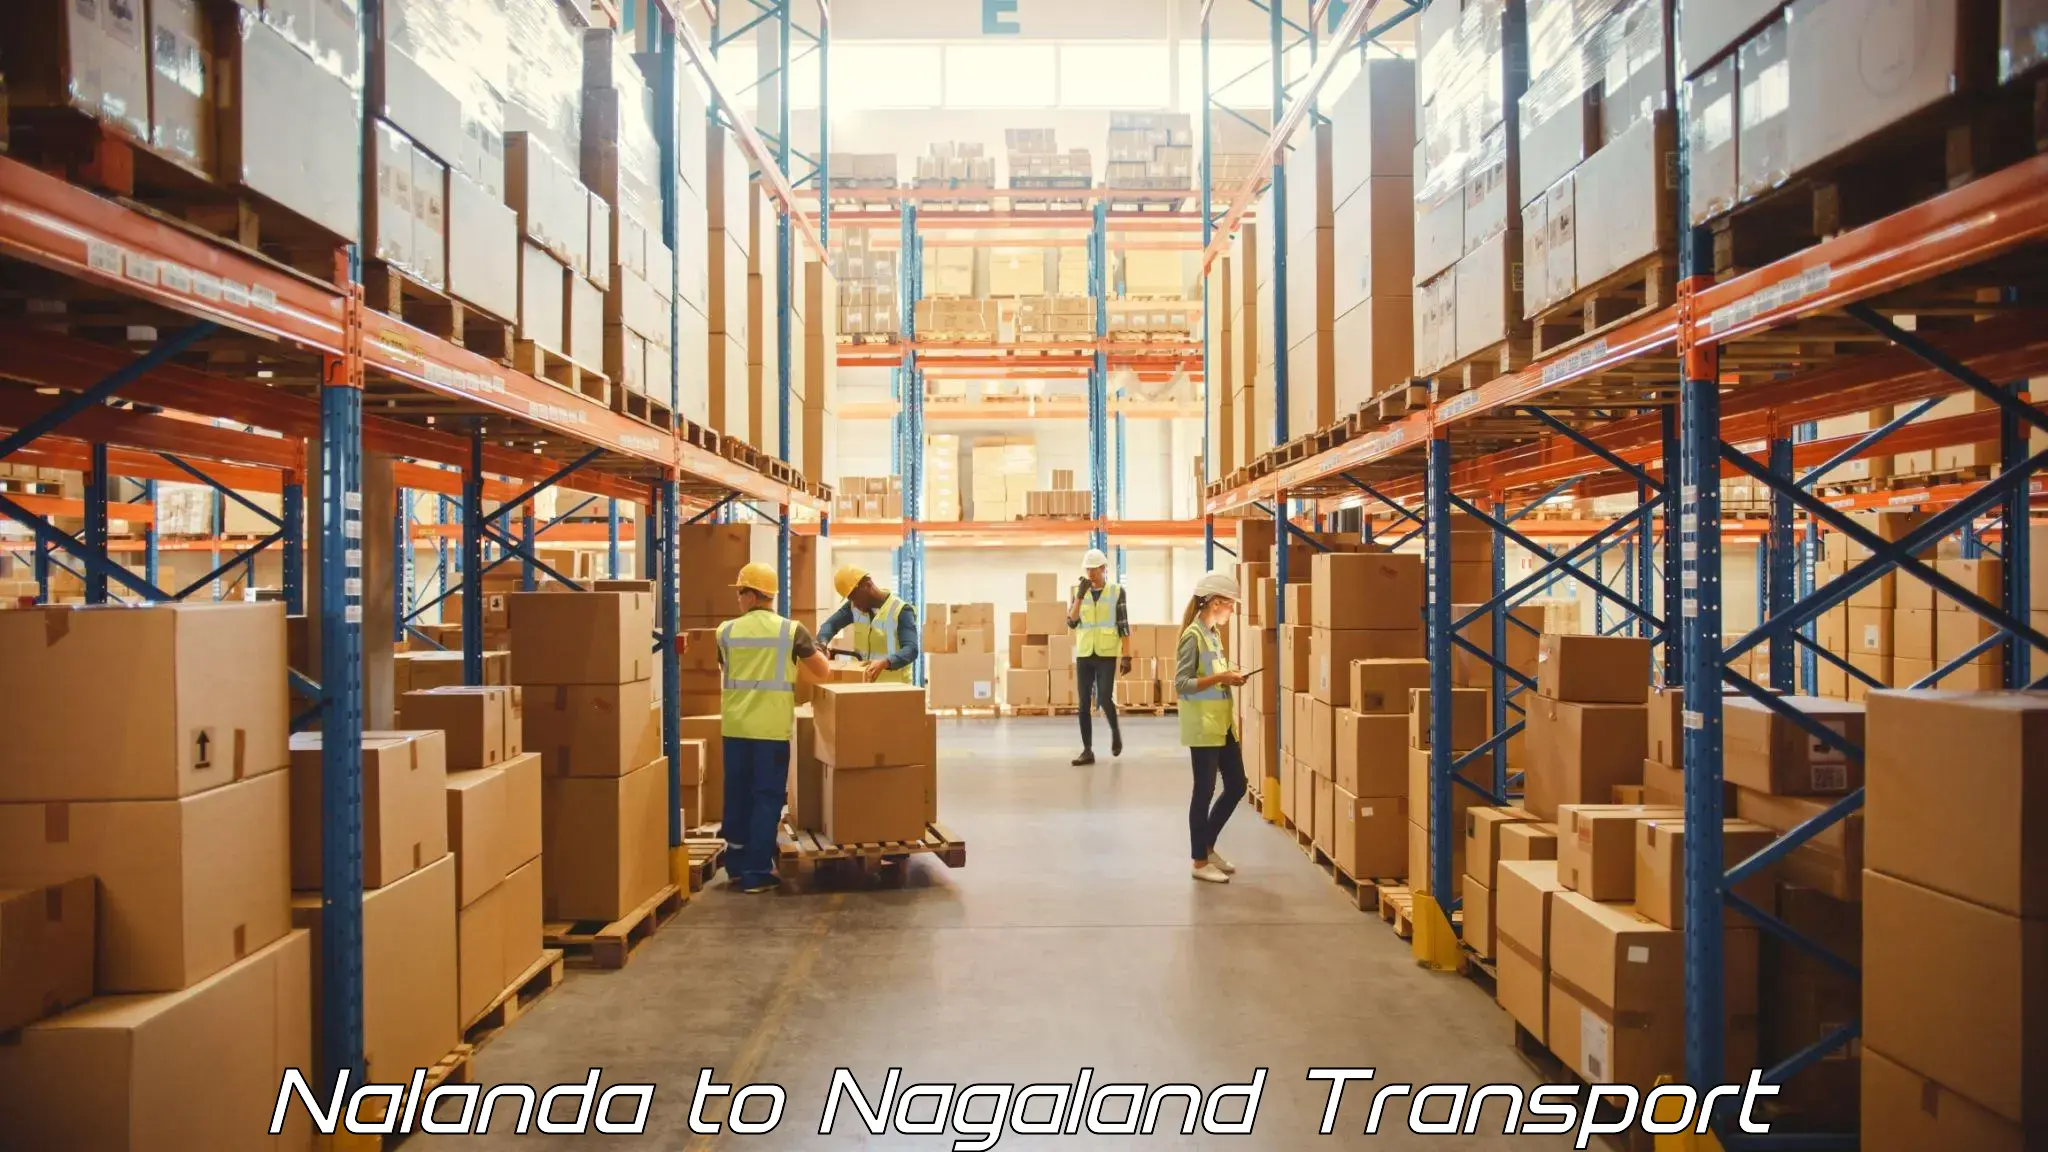 Nearest transport service Nalanda to Nagaland